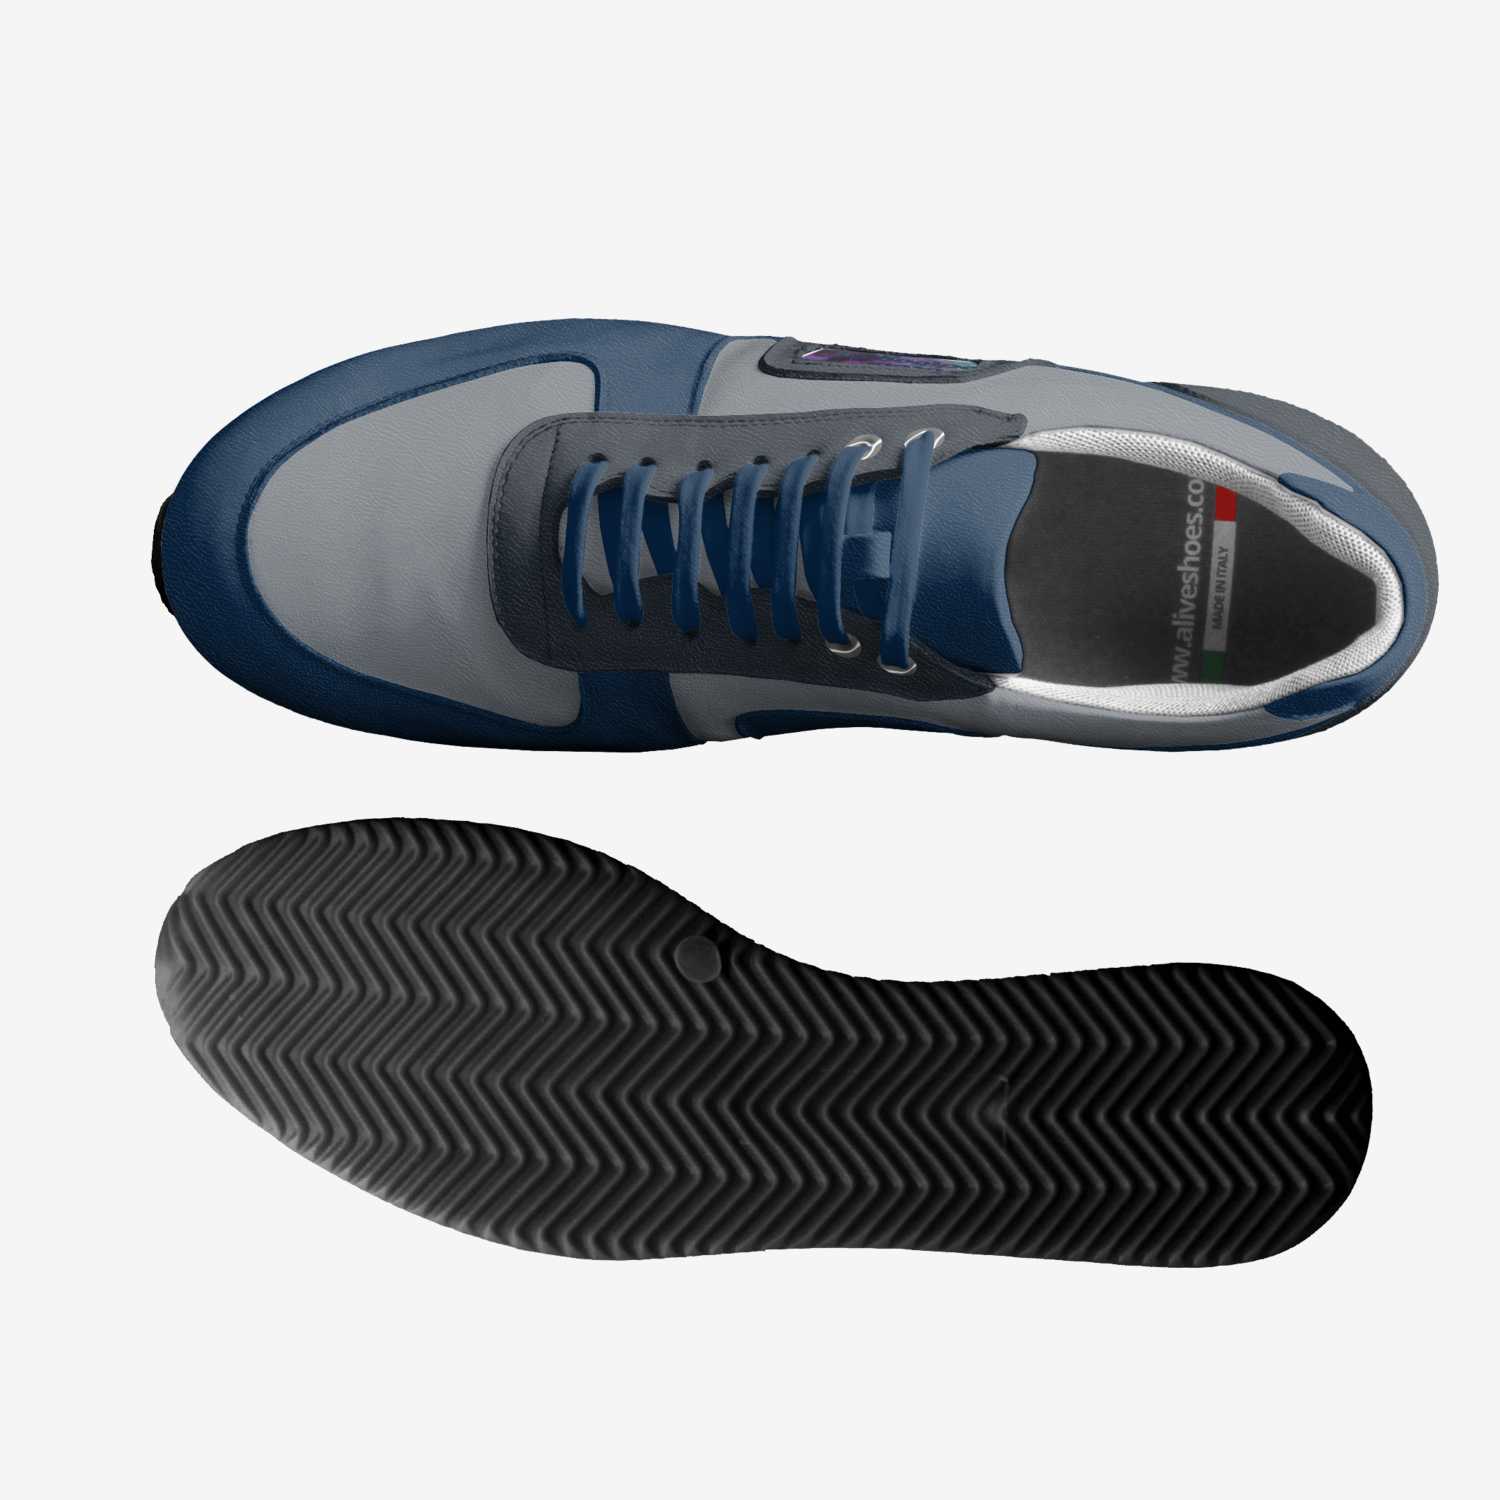 Triton 2 | A Custom Shoe concept by Geoff Stockton